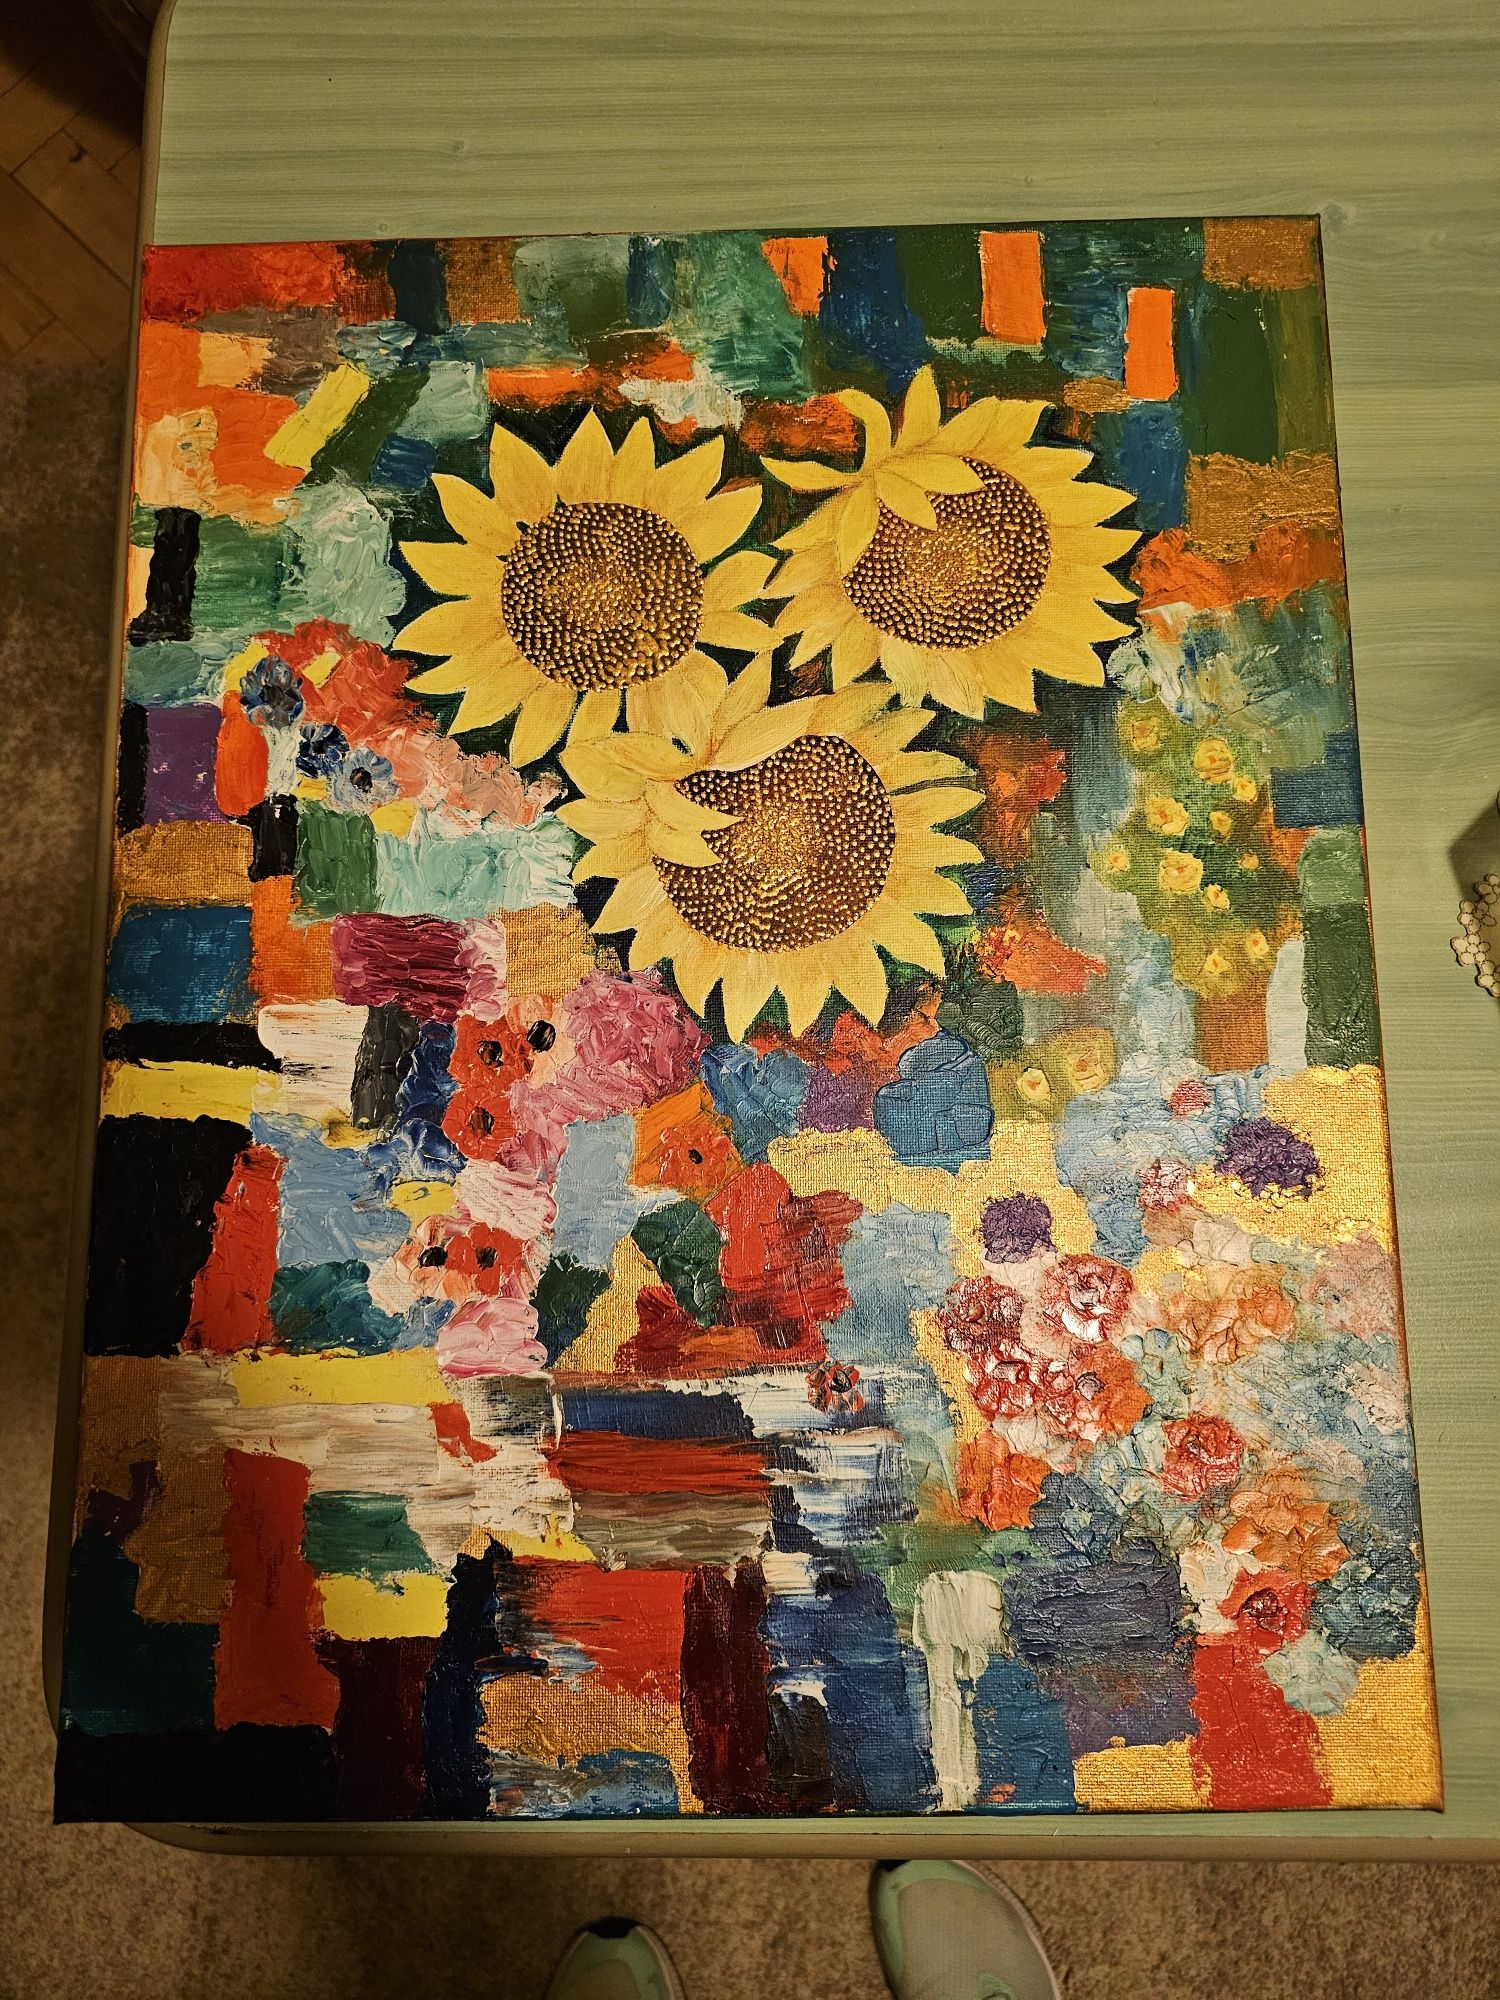 Picturi in ulei cu tema florala